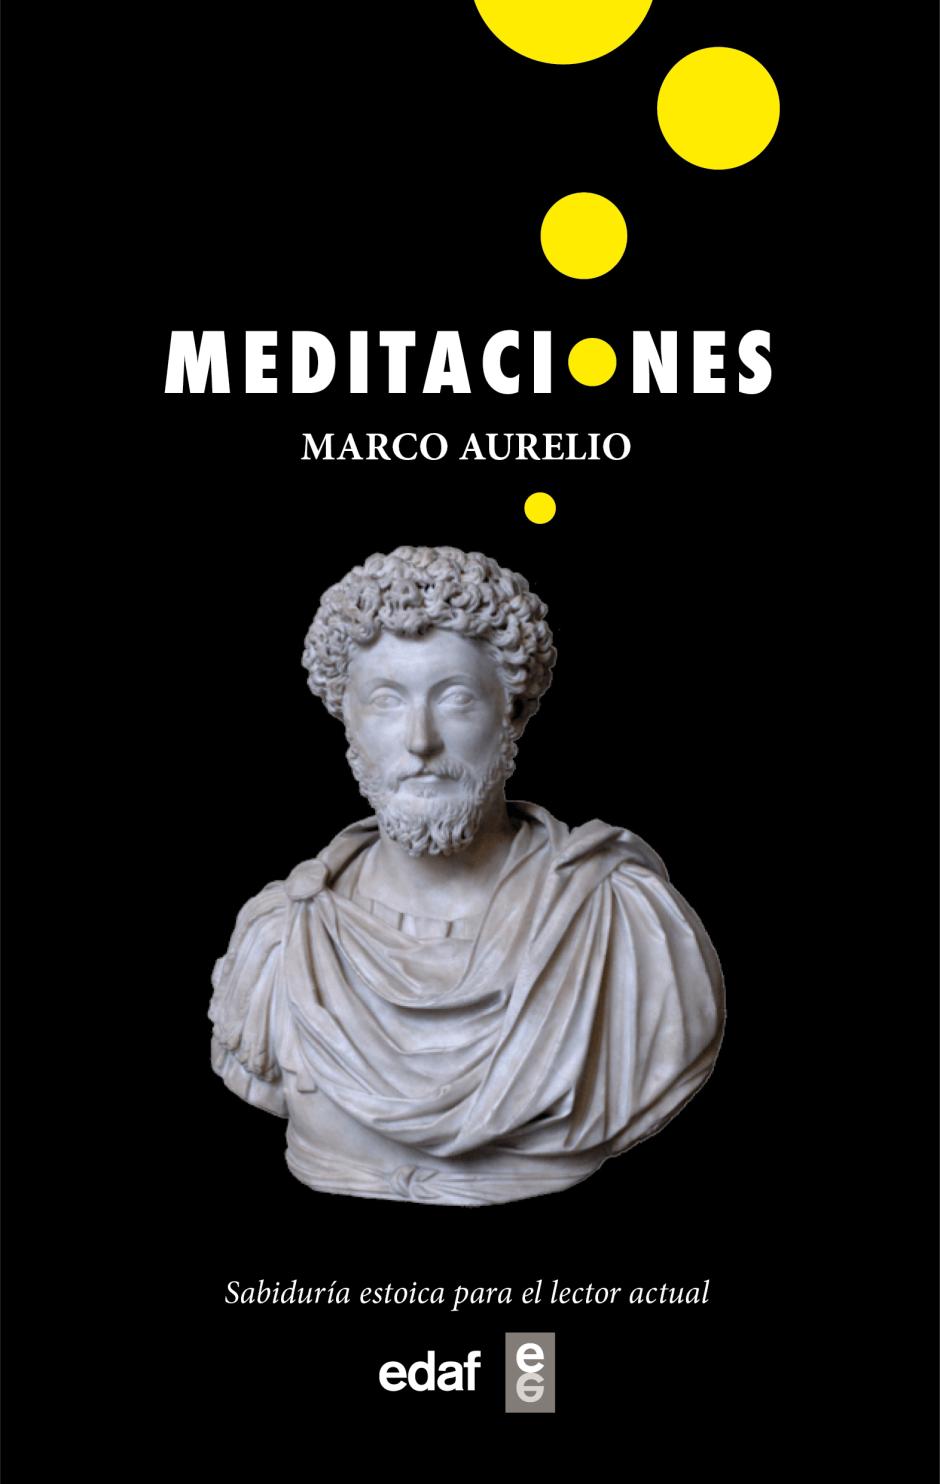 "Meditaciones" de Marco Aurelio